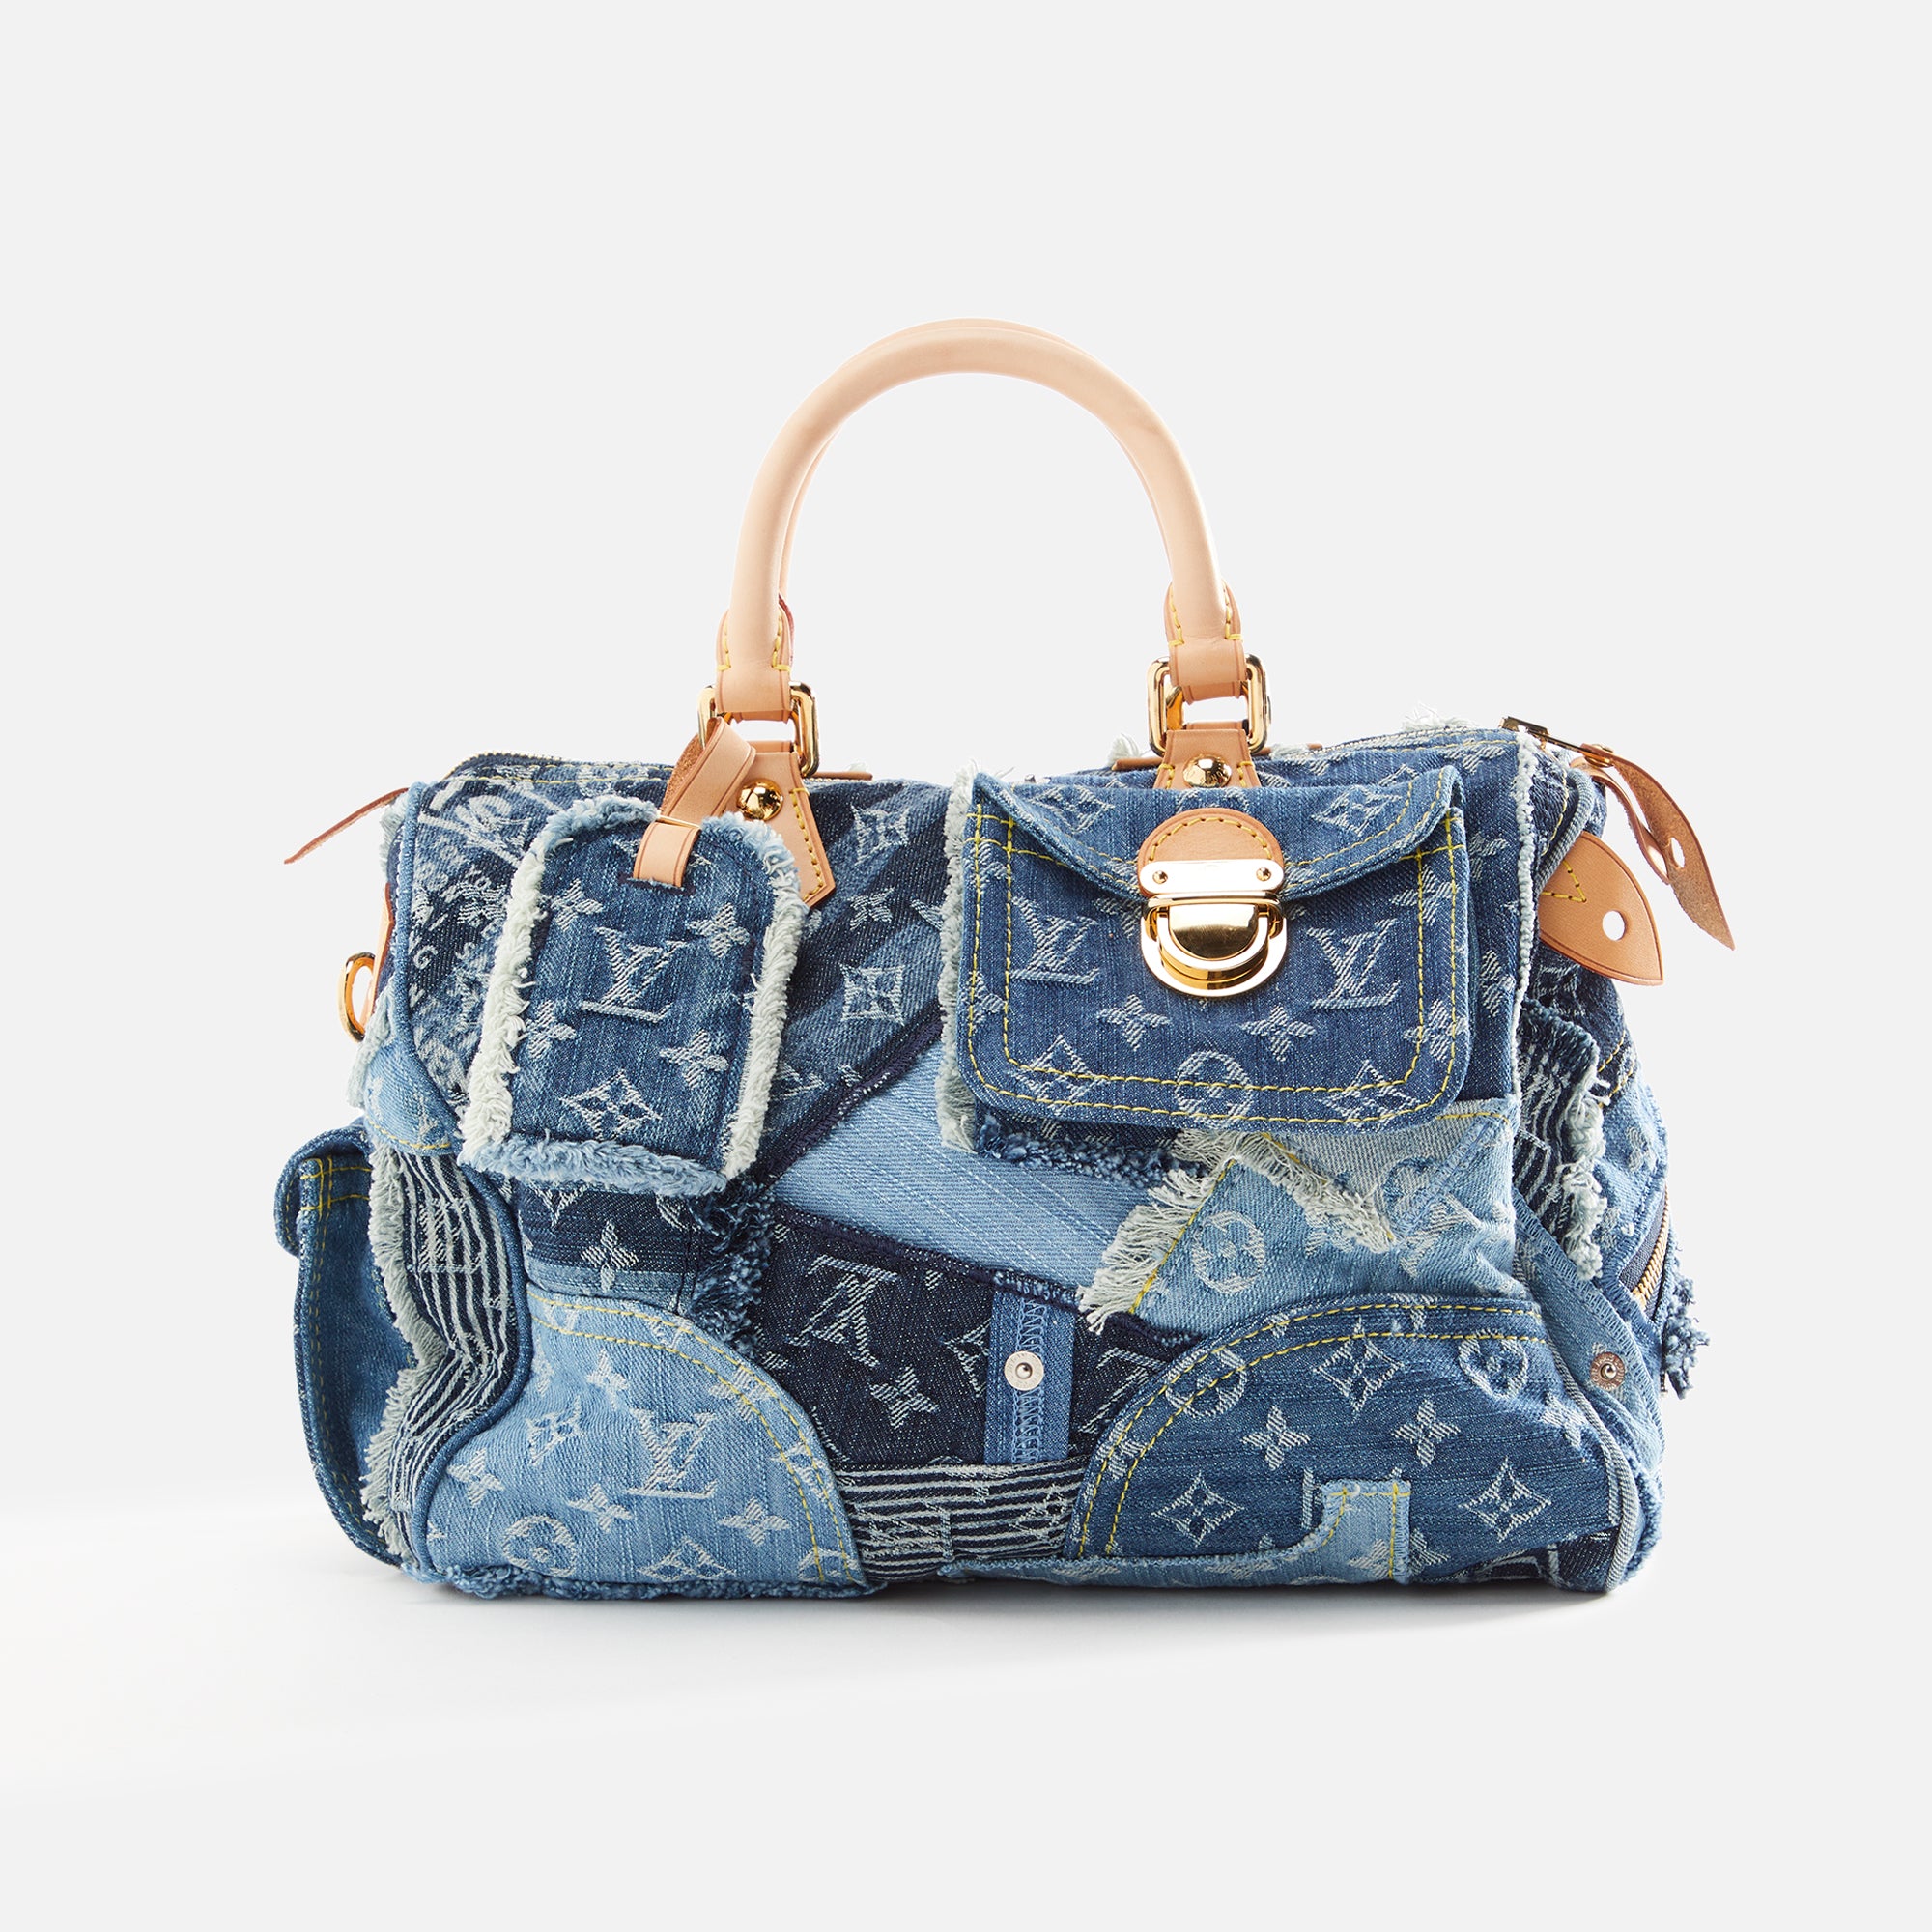 WGACA Louis Vuitton Denim Patchwork Speedy - Messenger Bag BOSS